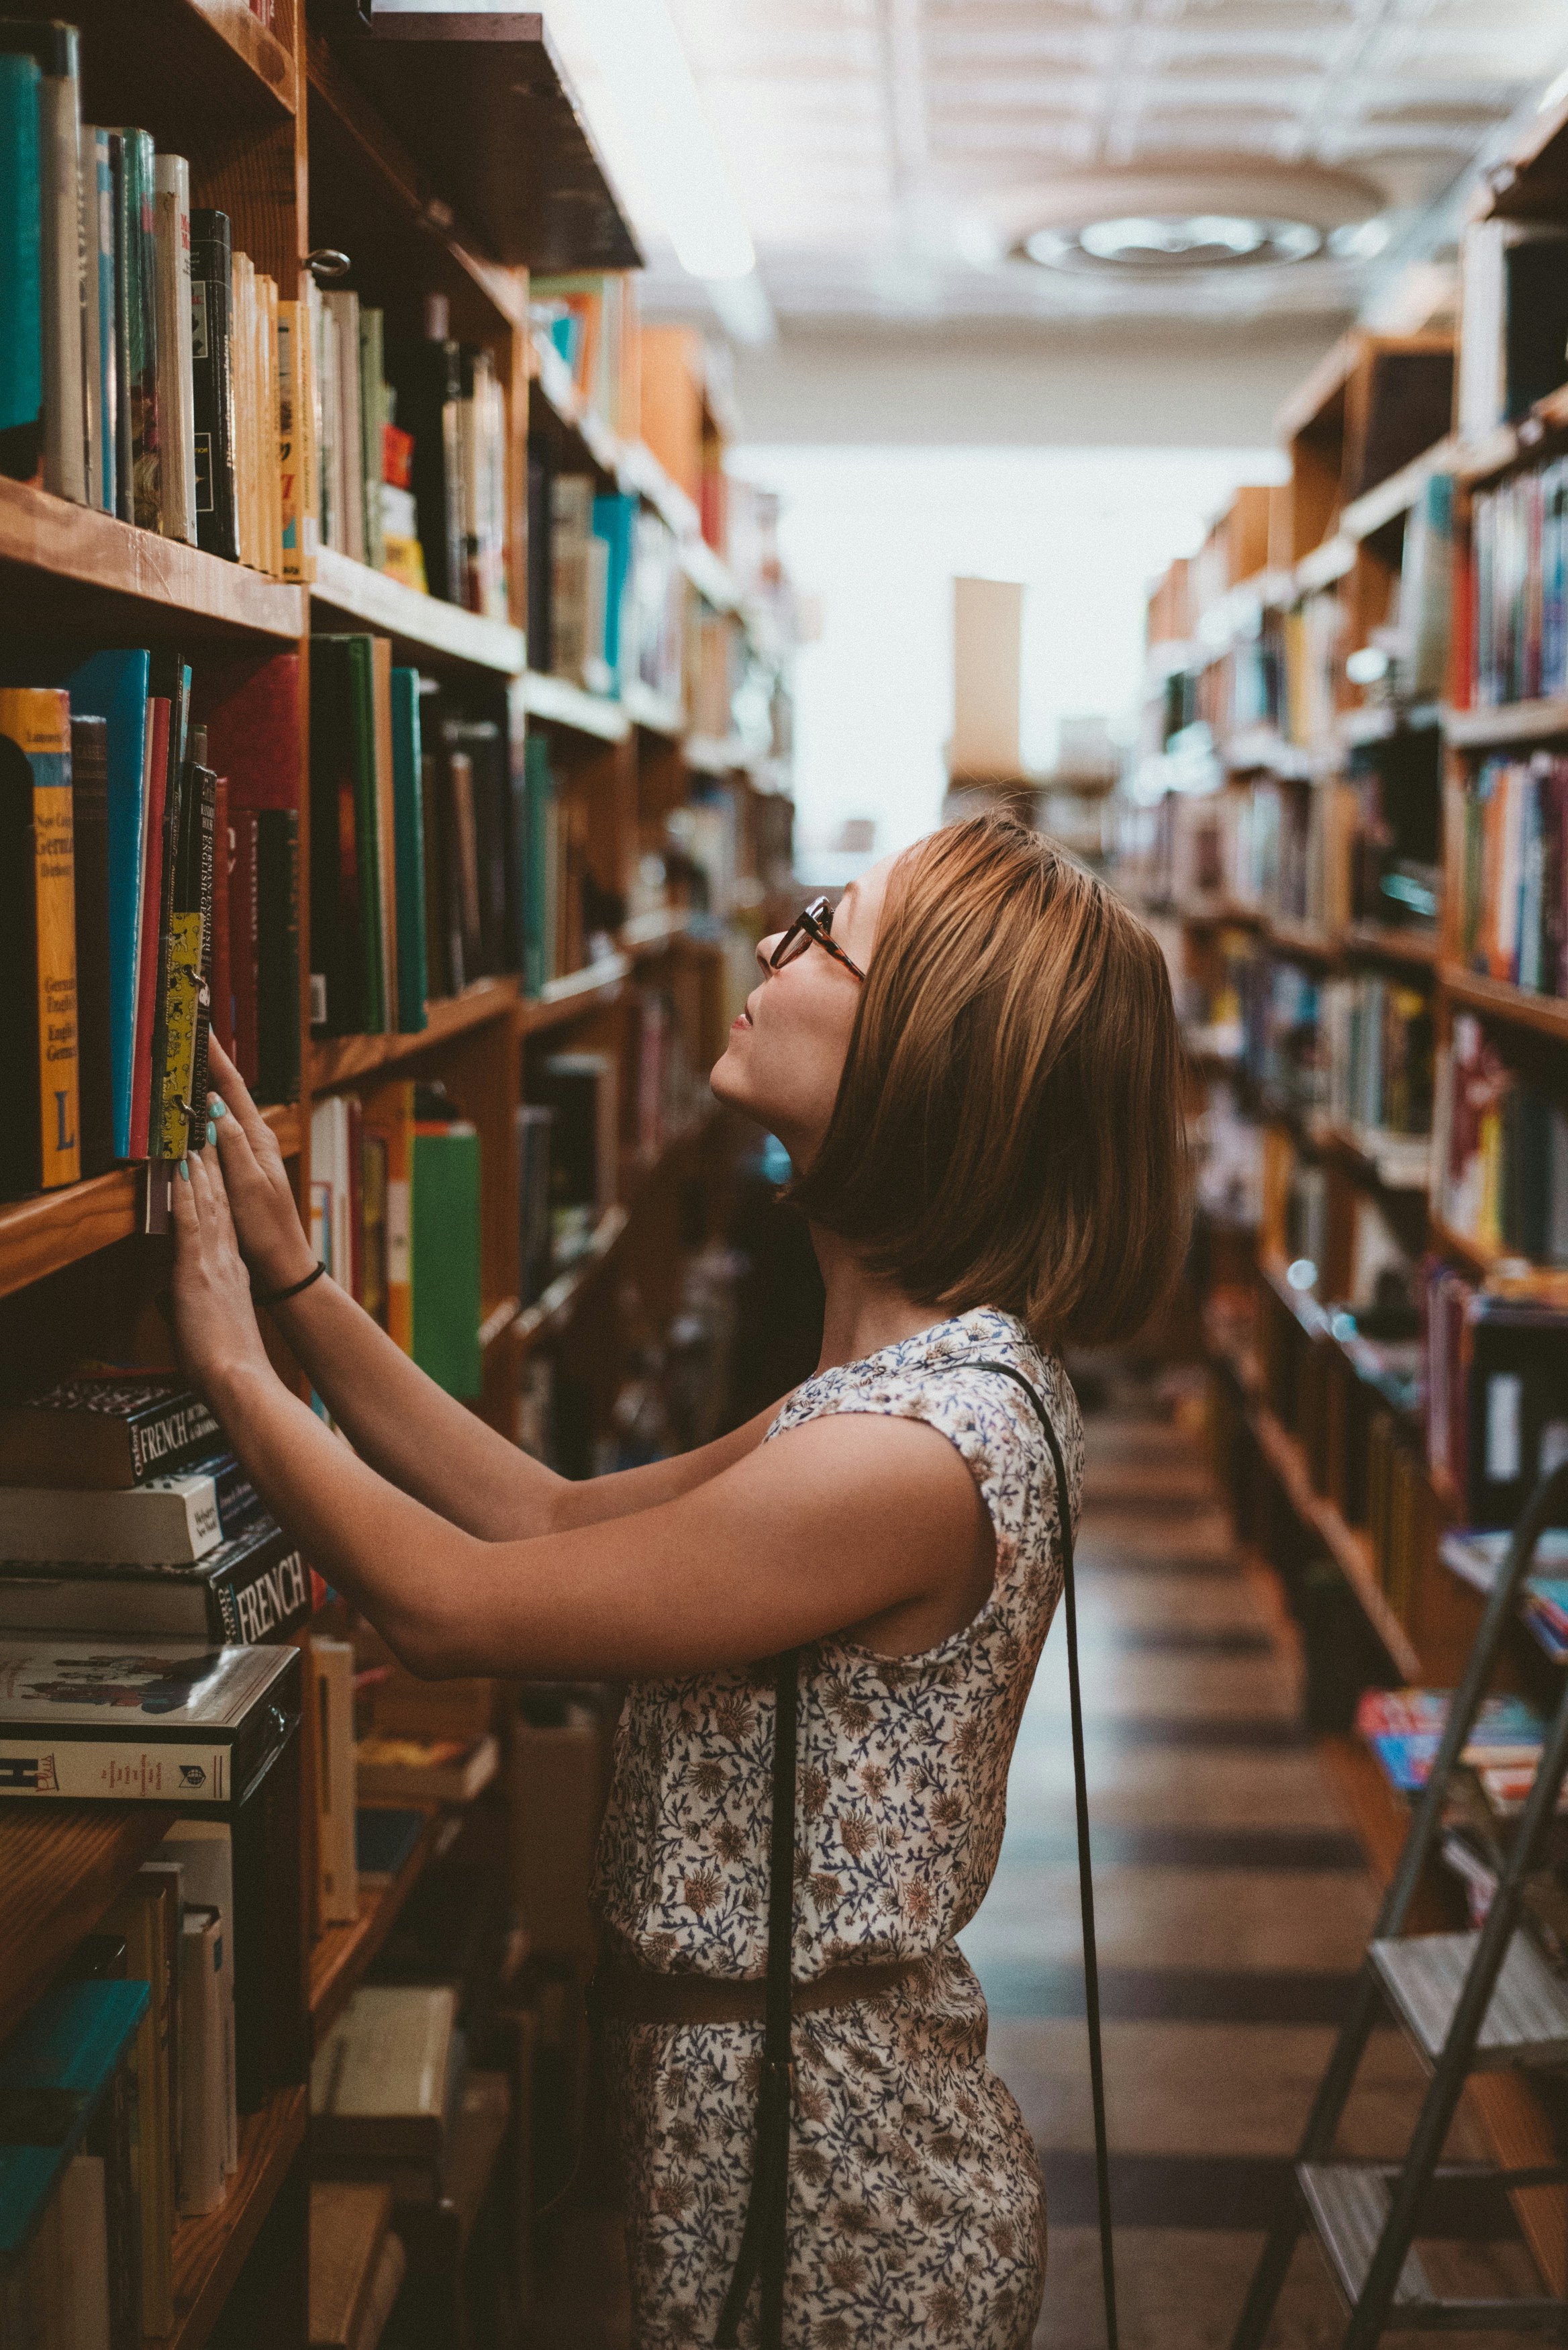 Eine Frau greift nach einem Buch in einer Bibliothek | Quelle: Unsplash